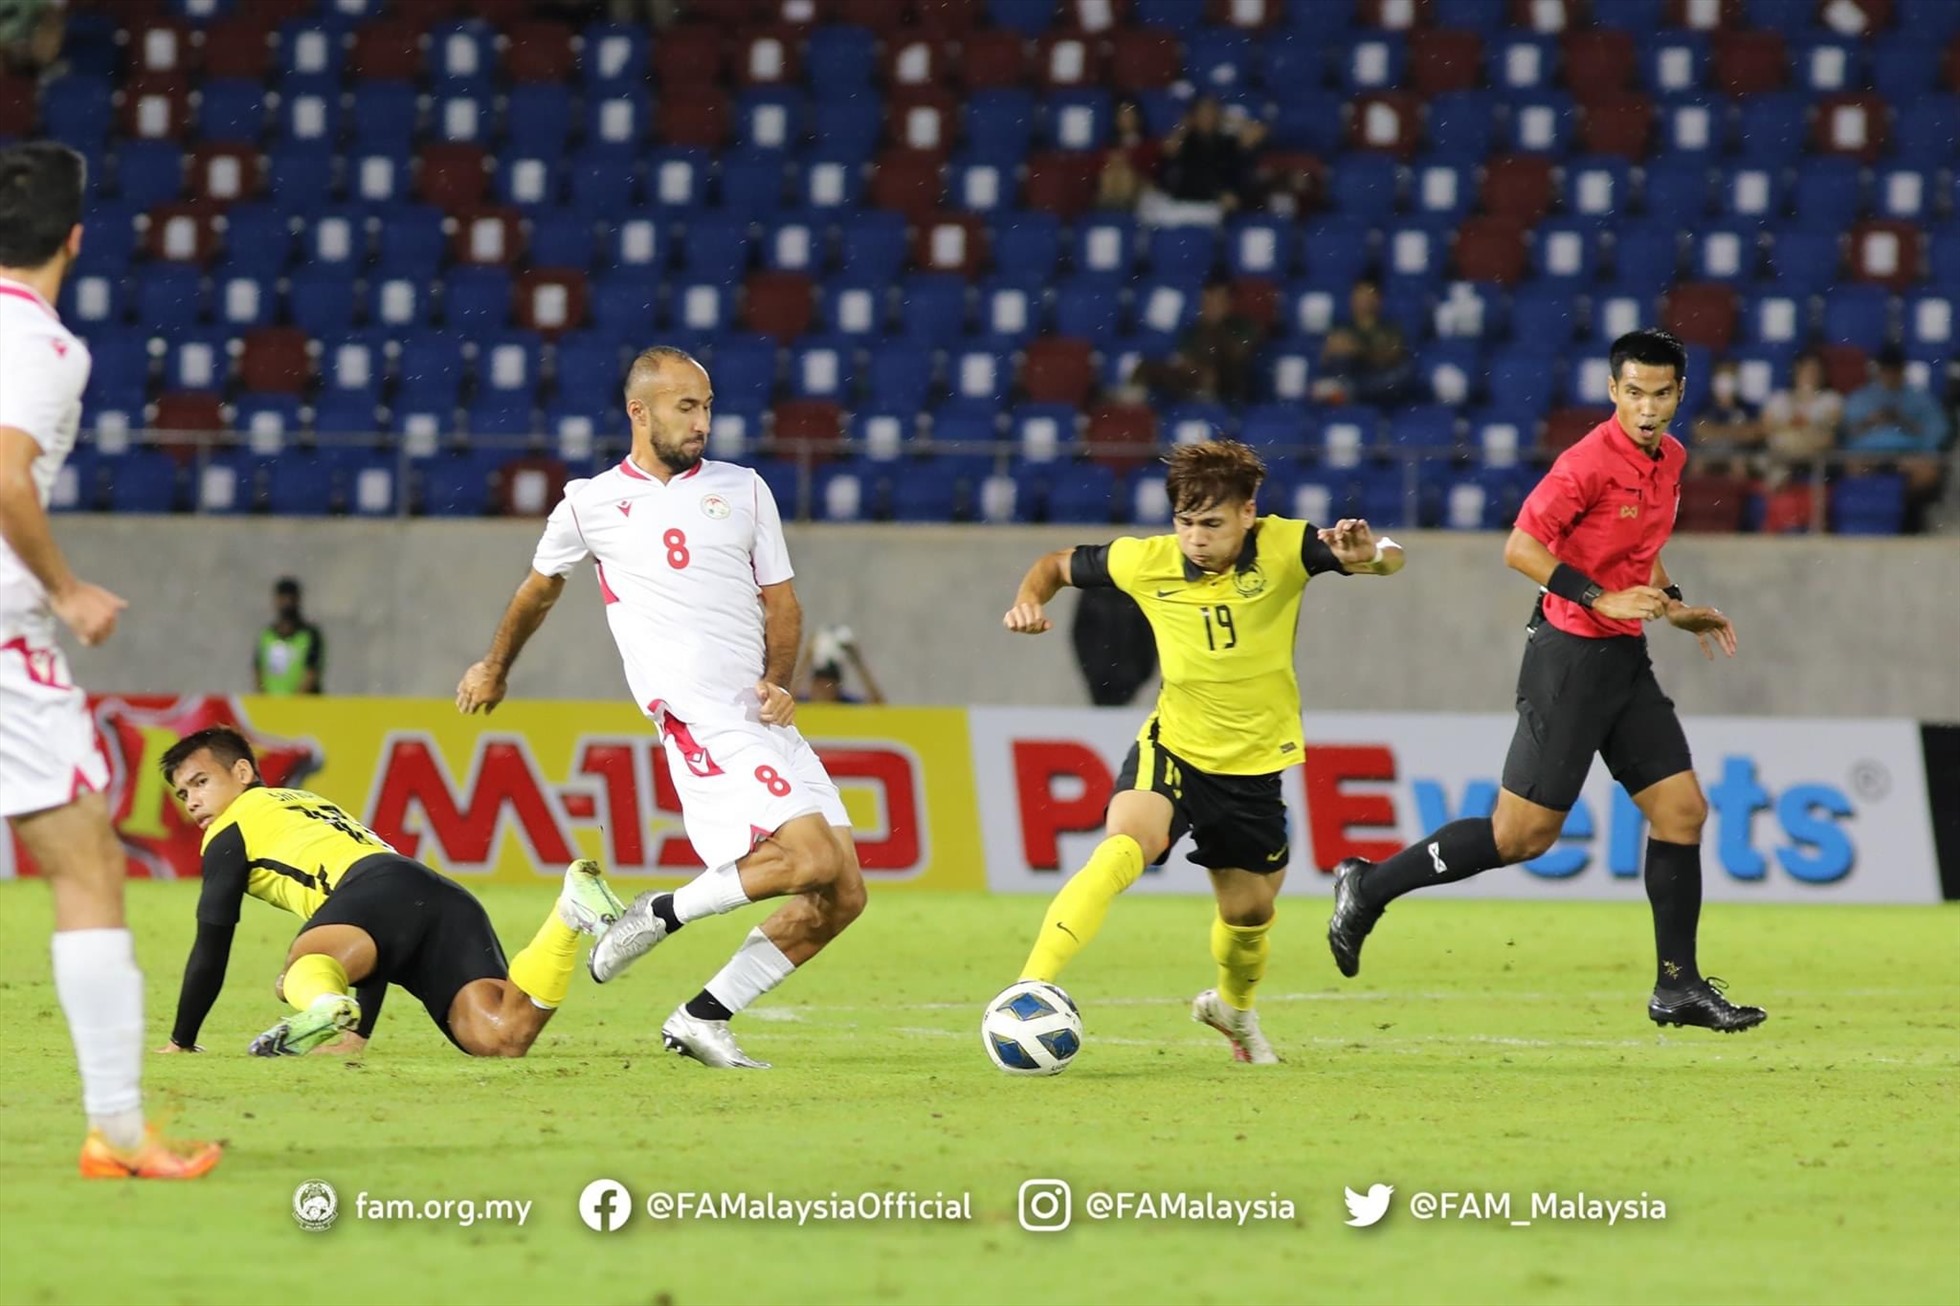 Malaysia và Tajikistan hoà nhau 0-0 trong thời gian thi đấu chính thức. Ảnh: FAM